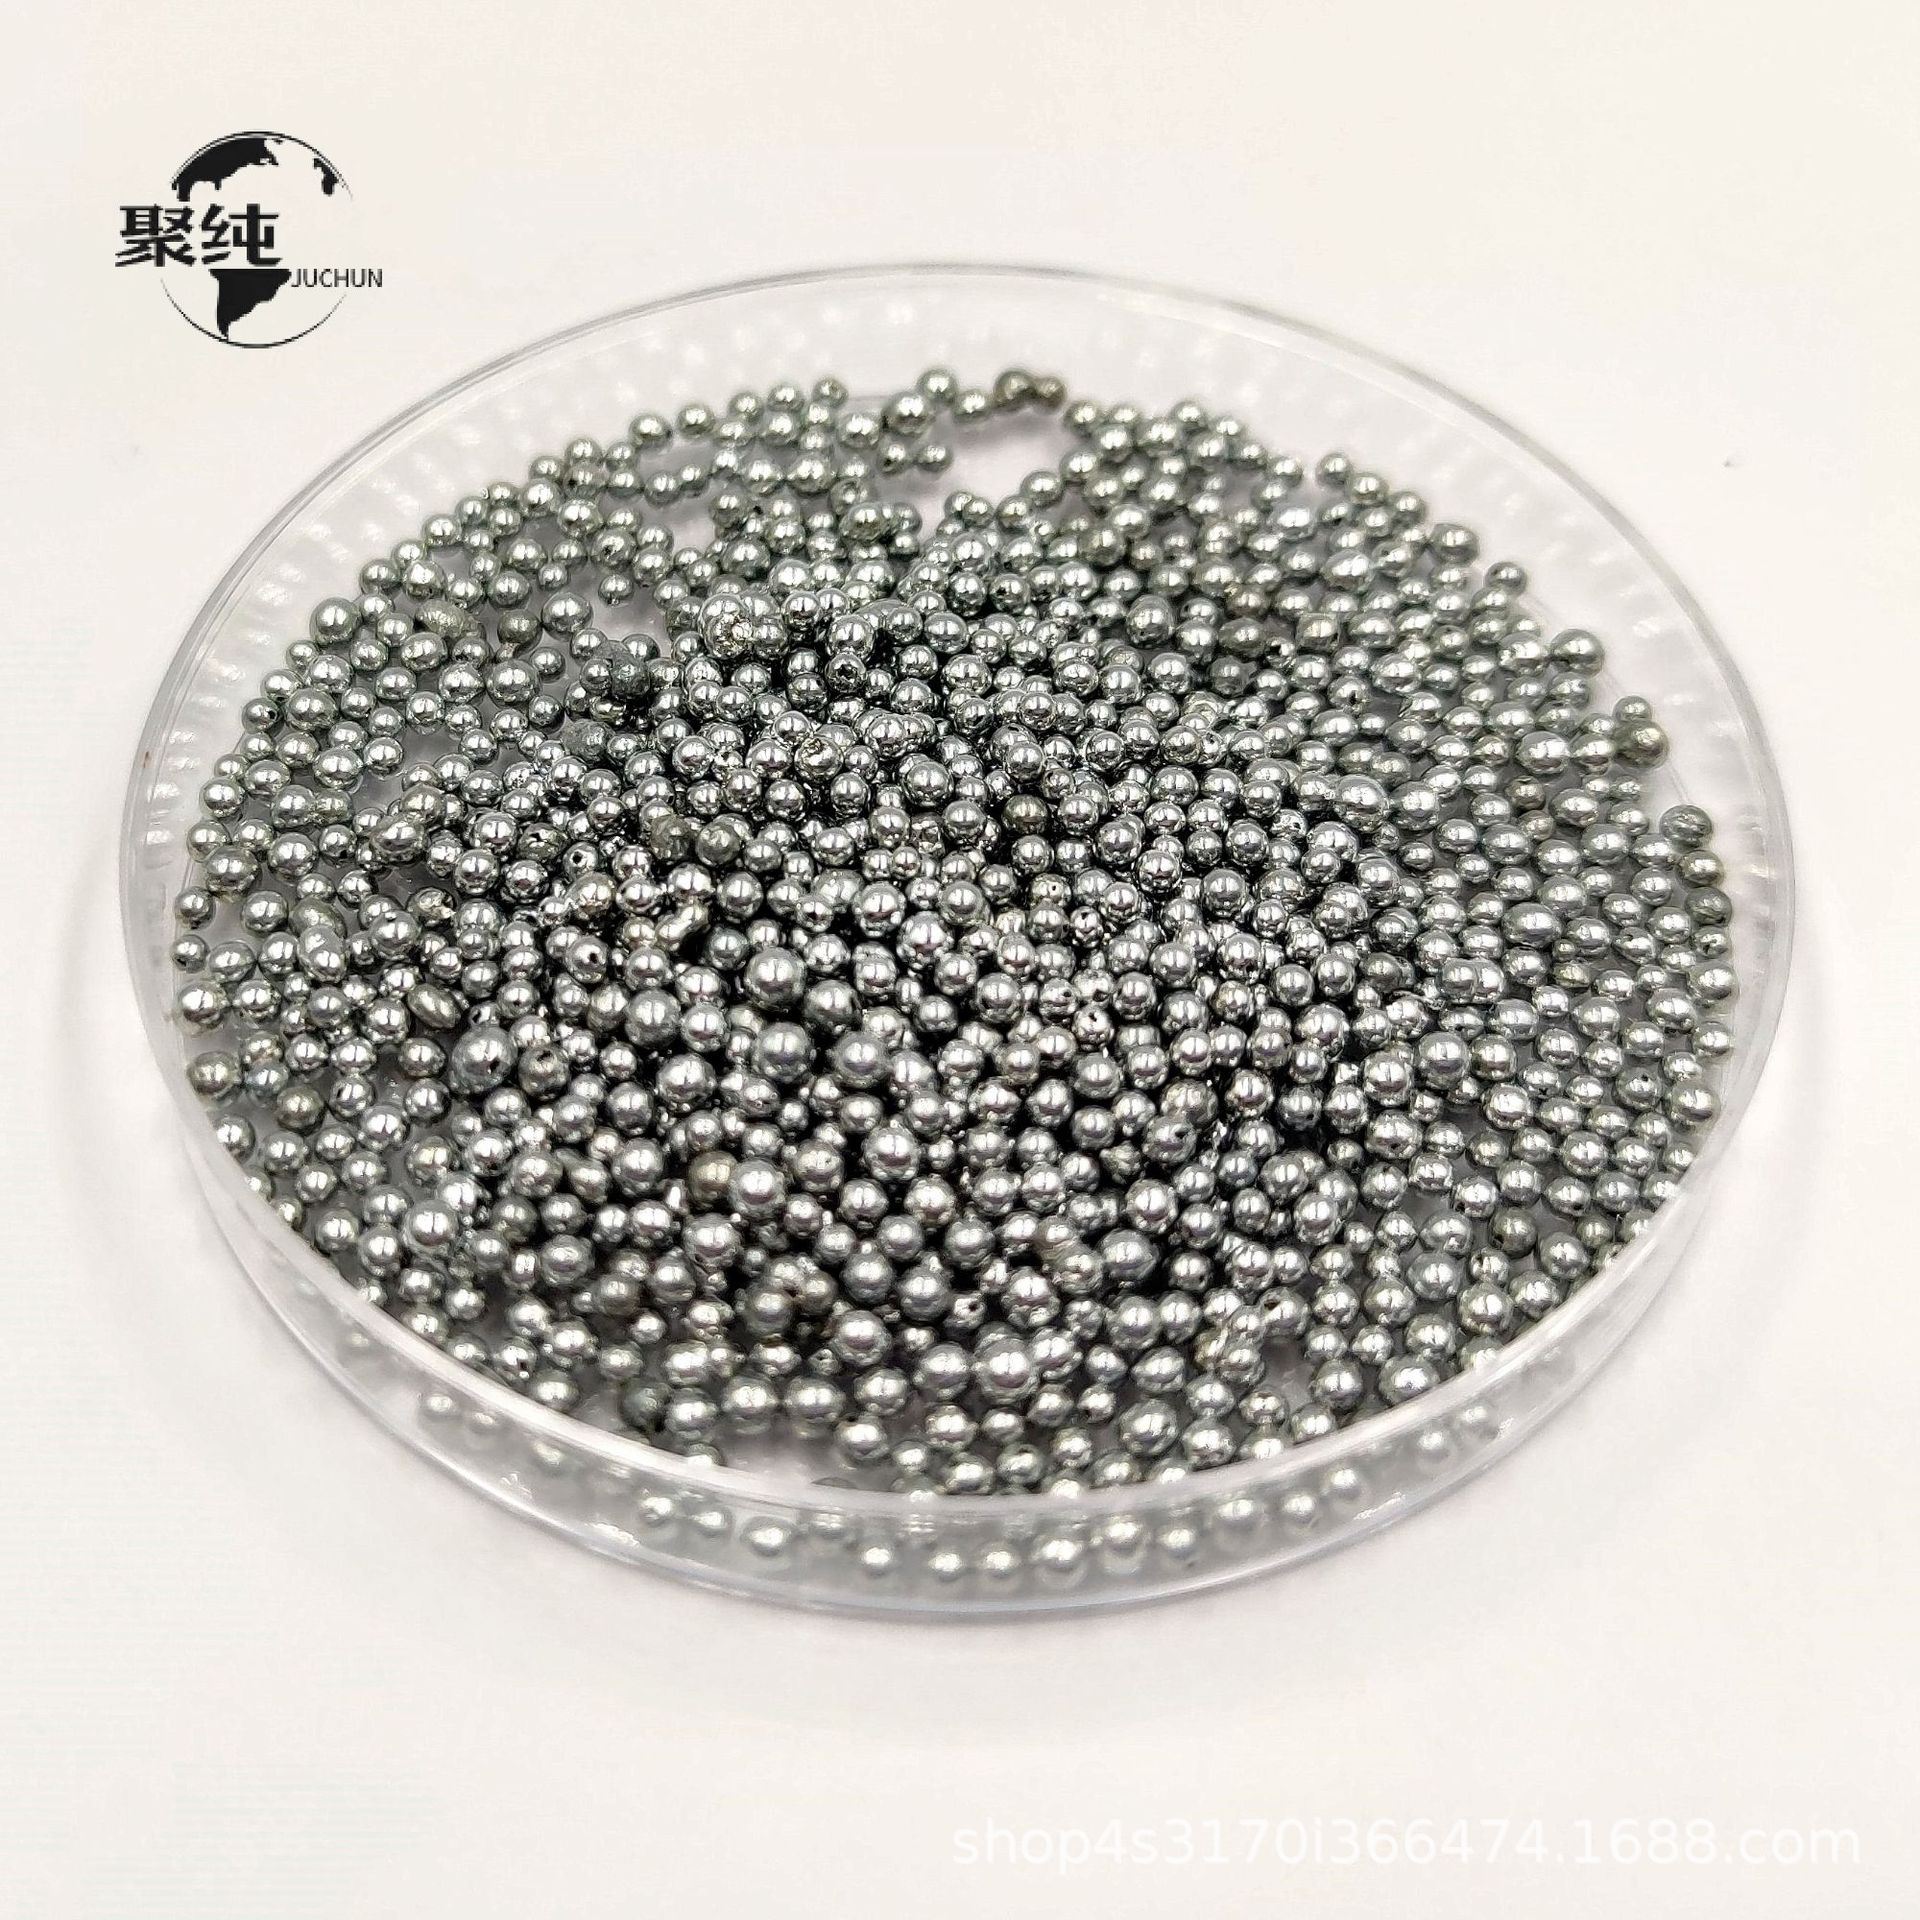 聚纯 4N锌丸 锌粒 99.99% 锌颗粒 1-3mm  Zinc granules